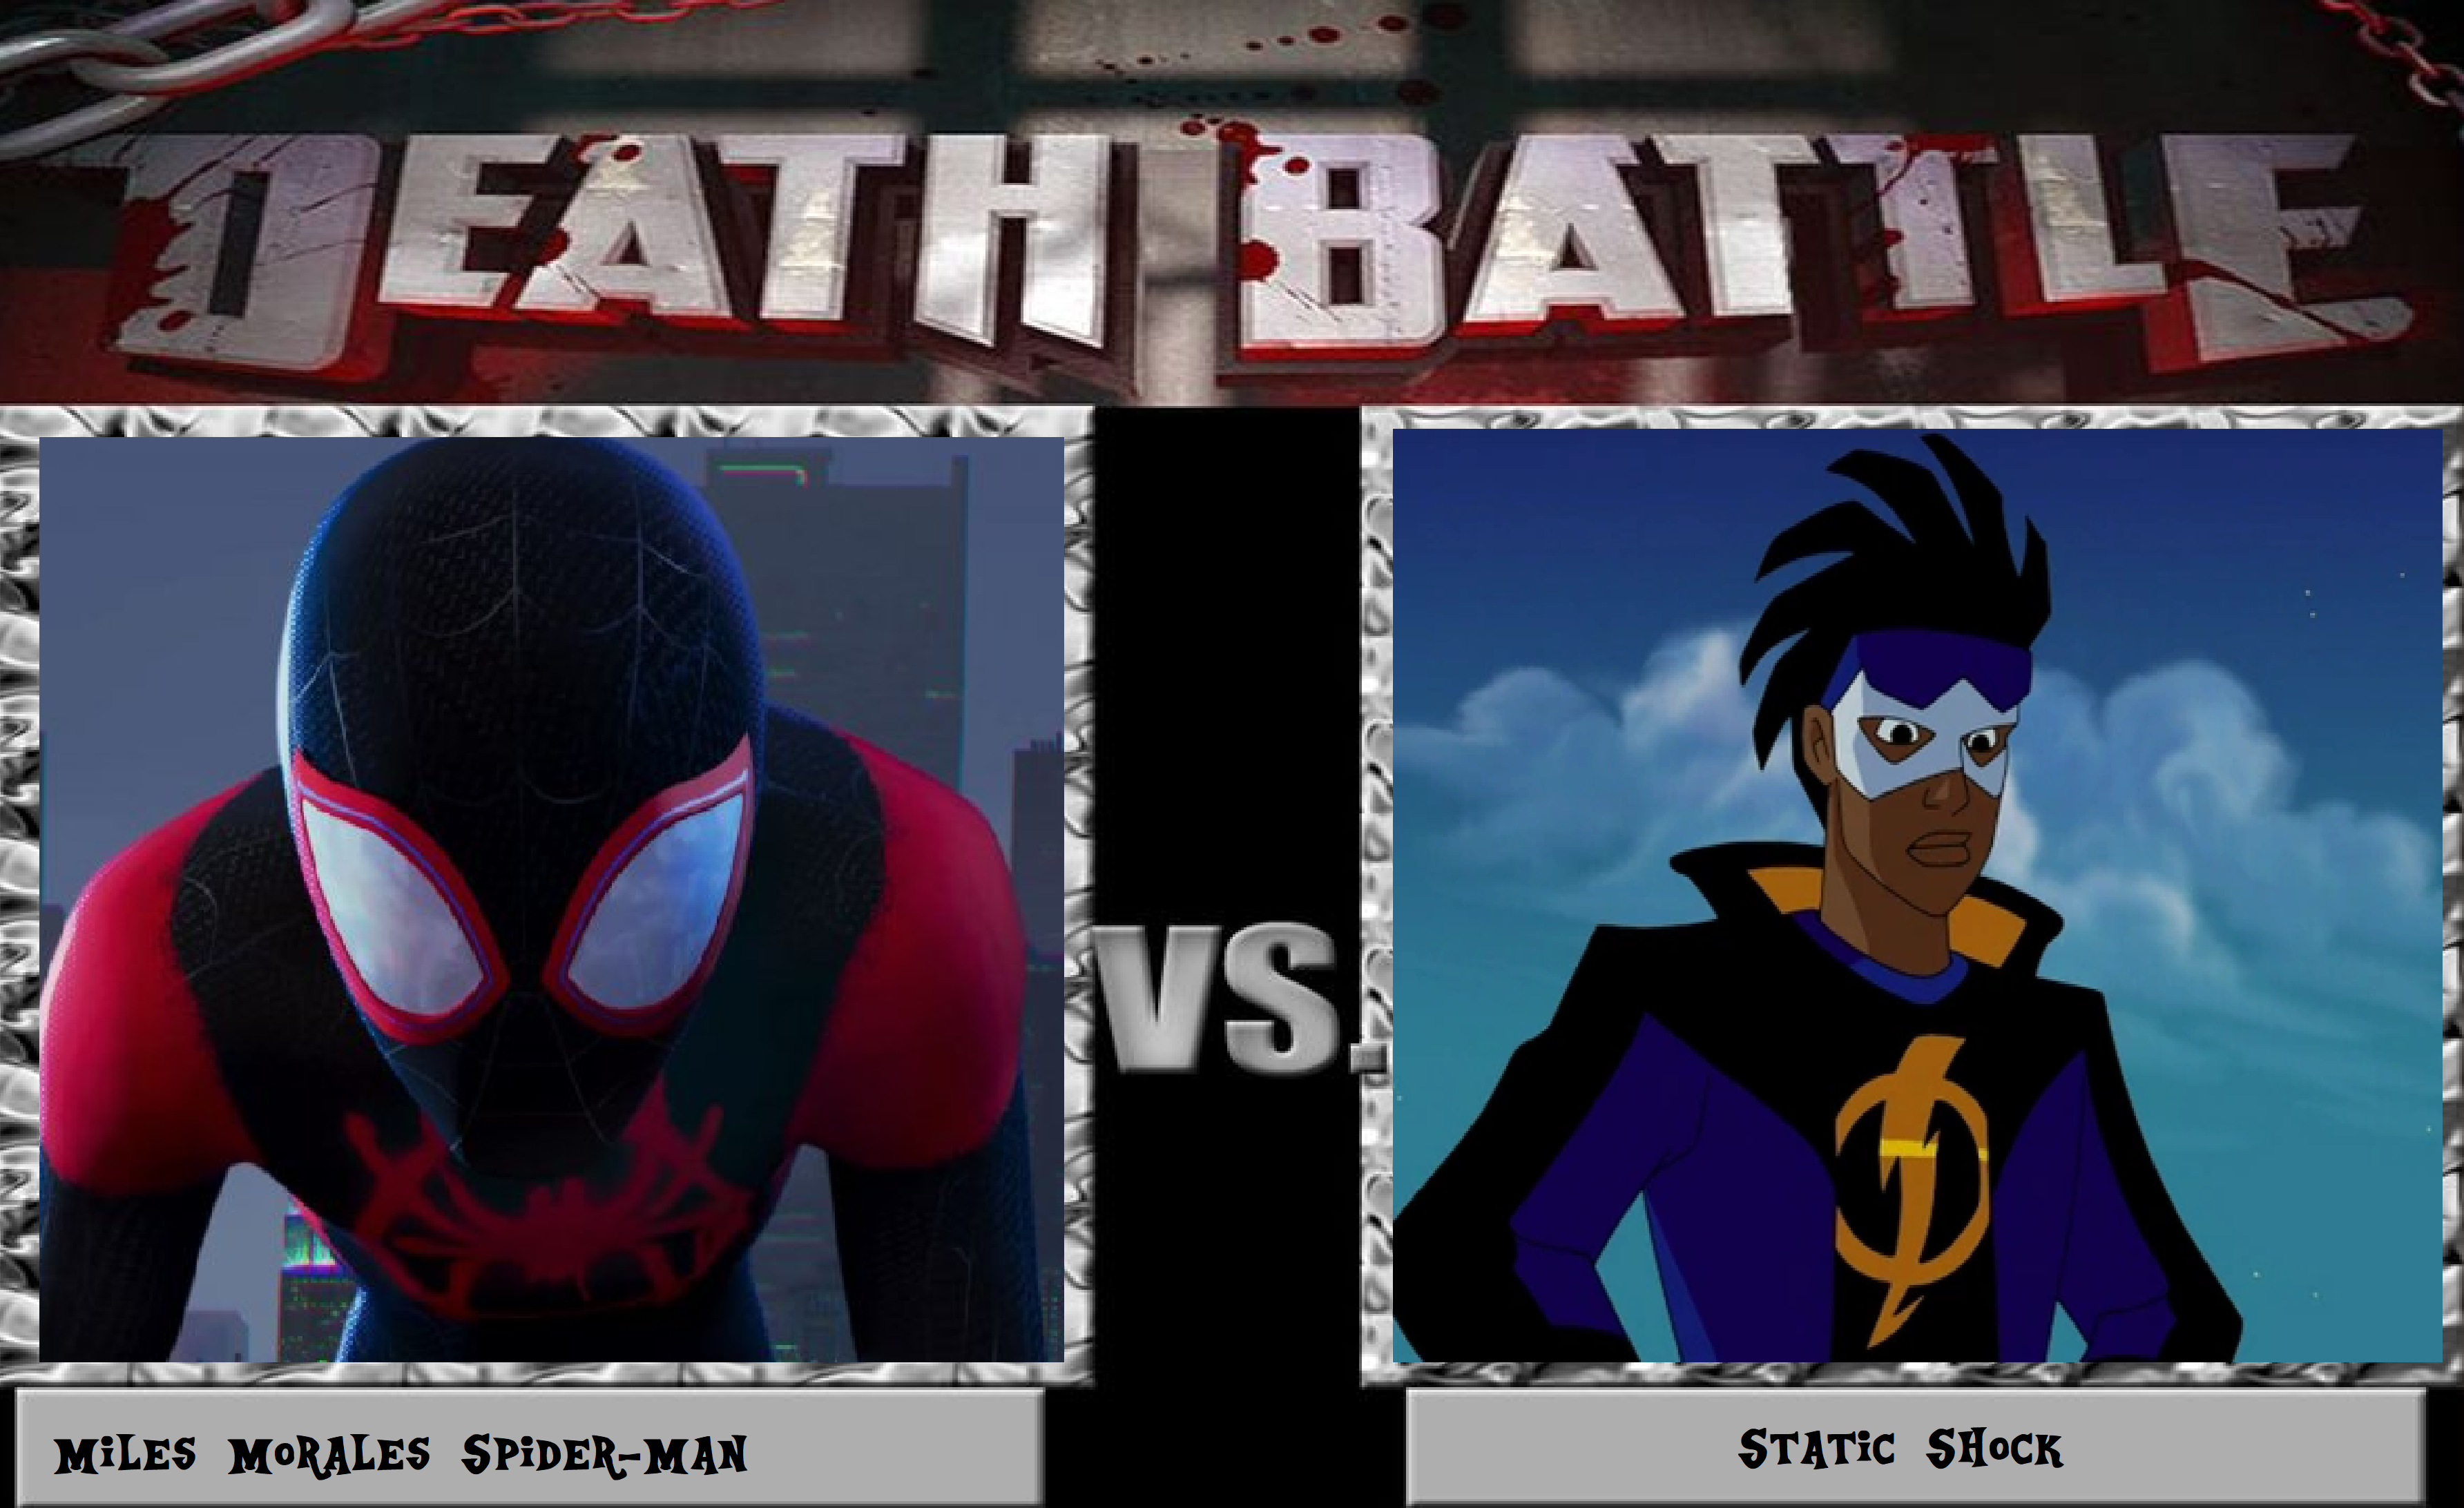 Next Death Battle: Spider-Man vs Static Shock by alvaxerox on DeviantArt